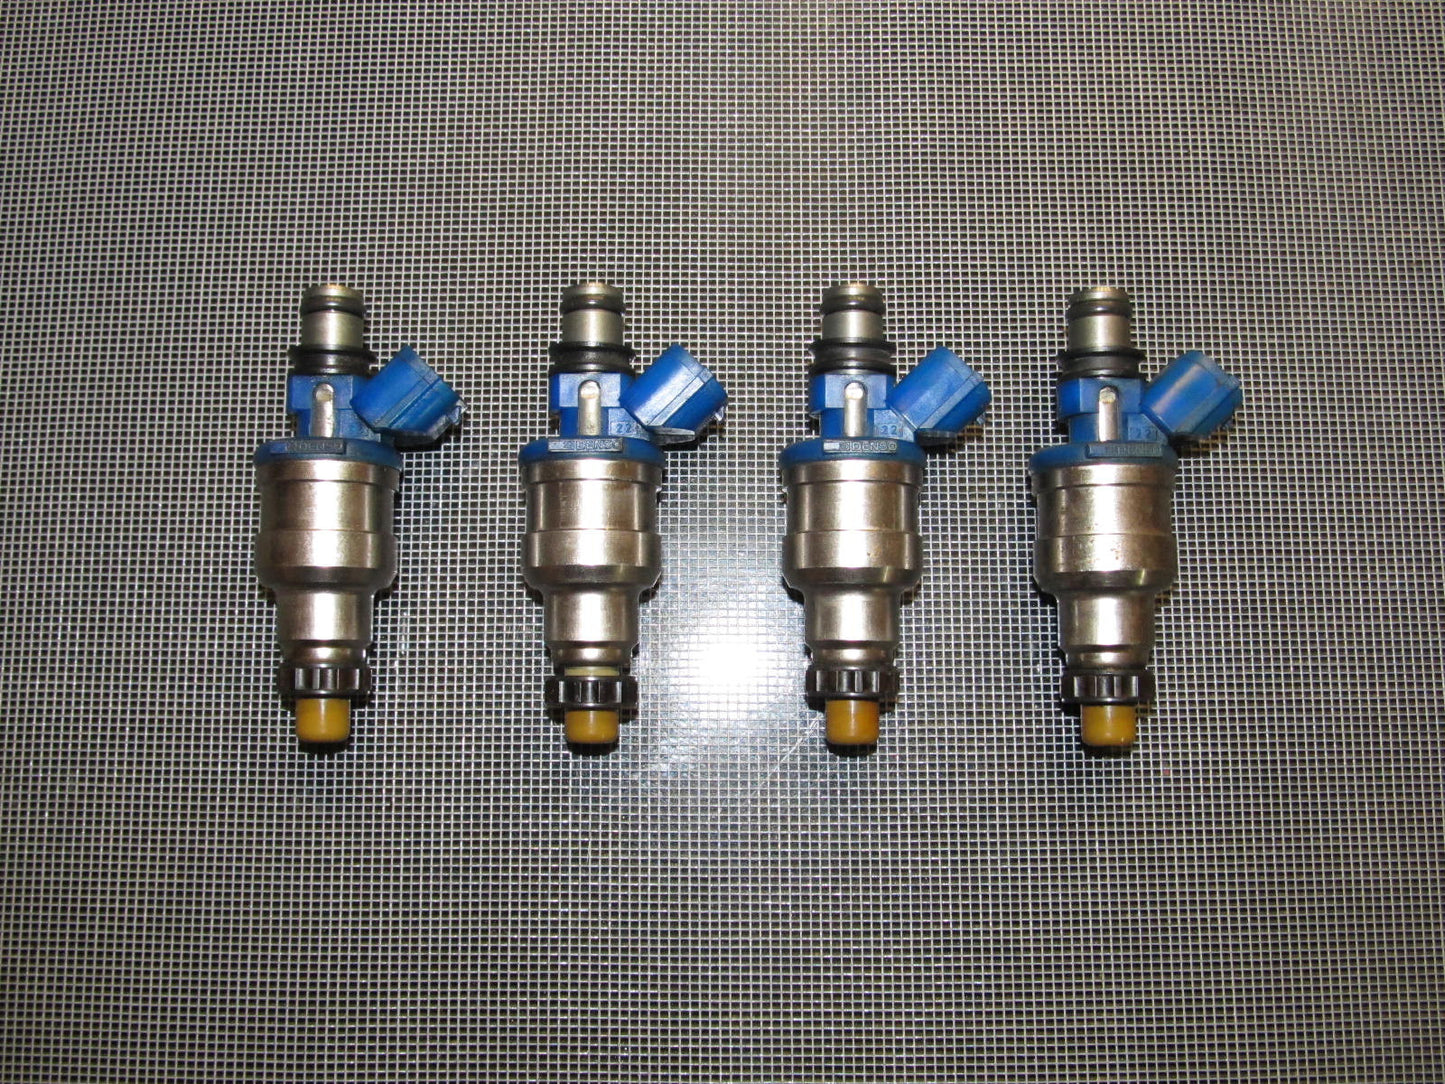 90-93 Mazda Miata OEM 1.6L Blue Fuel Injector - 4 pieces set